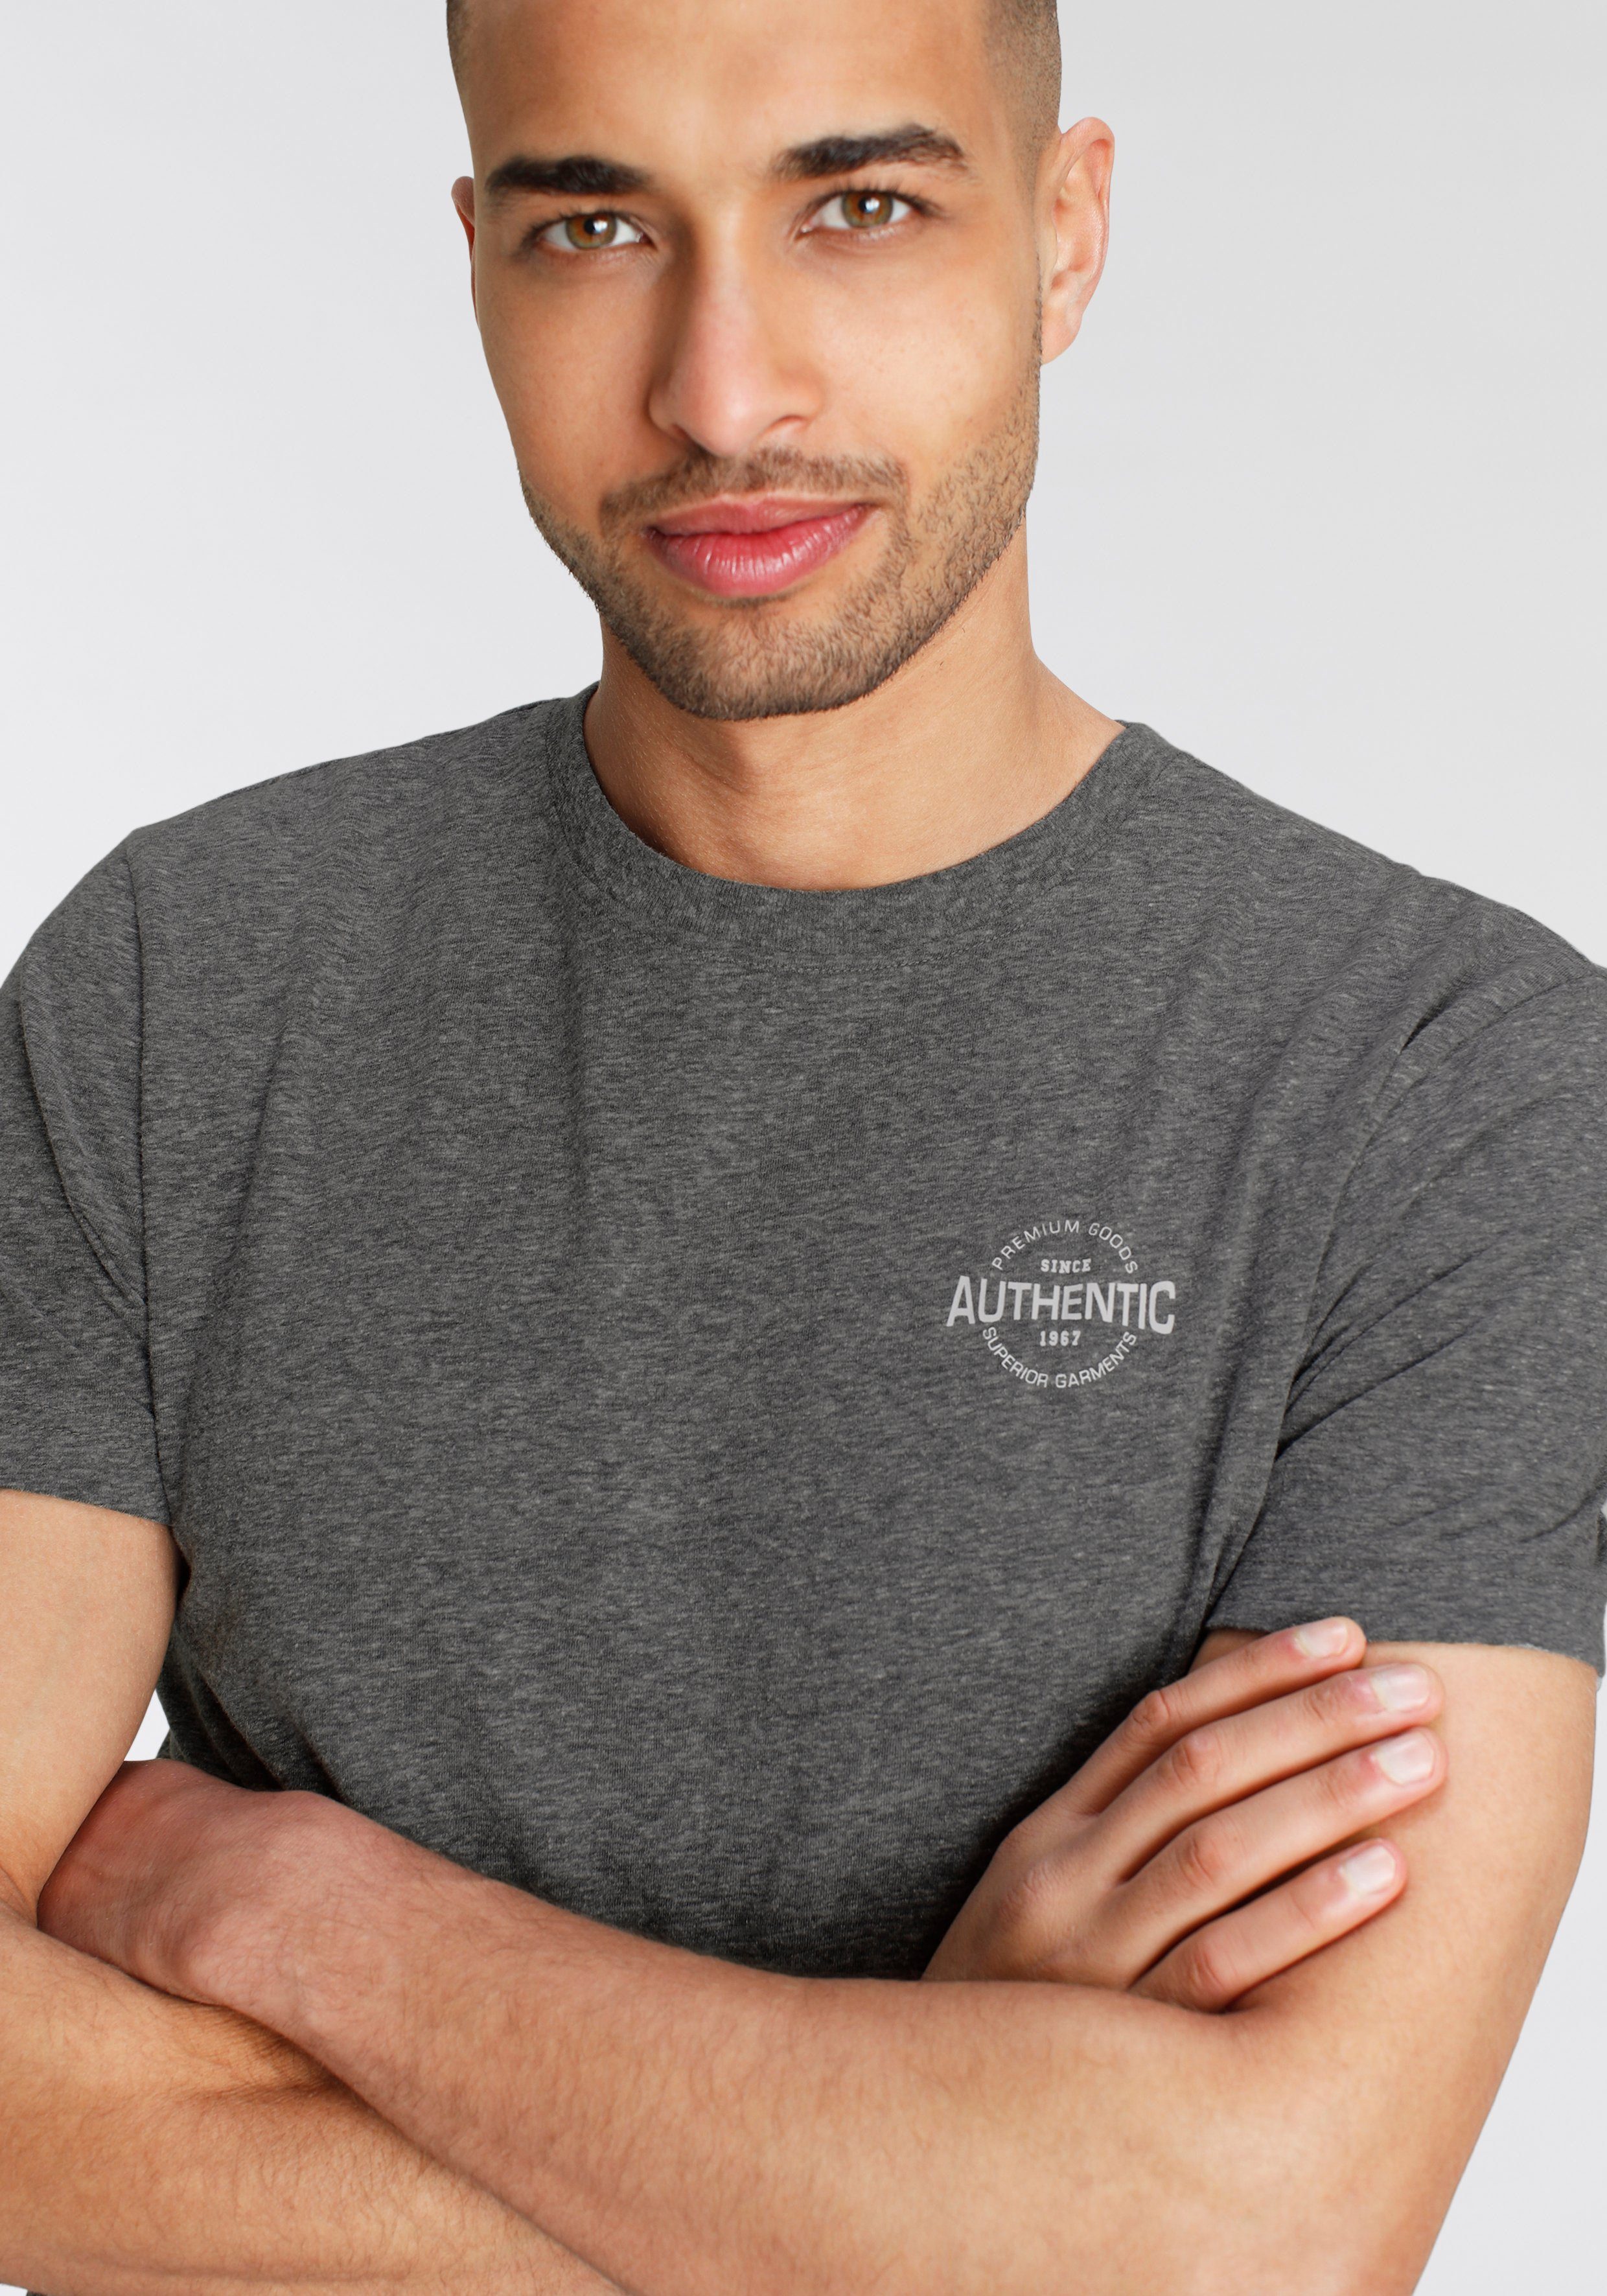 Optik Print AJC besonderer und mit anthrazit T-Shirt meliert Melange Logo in